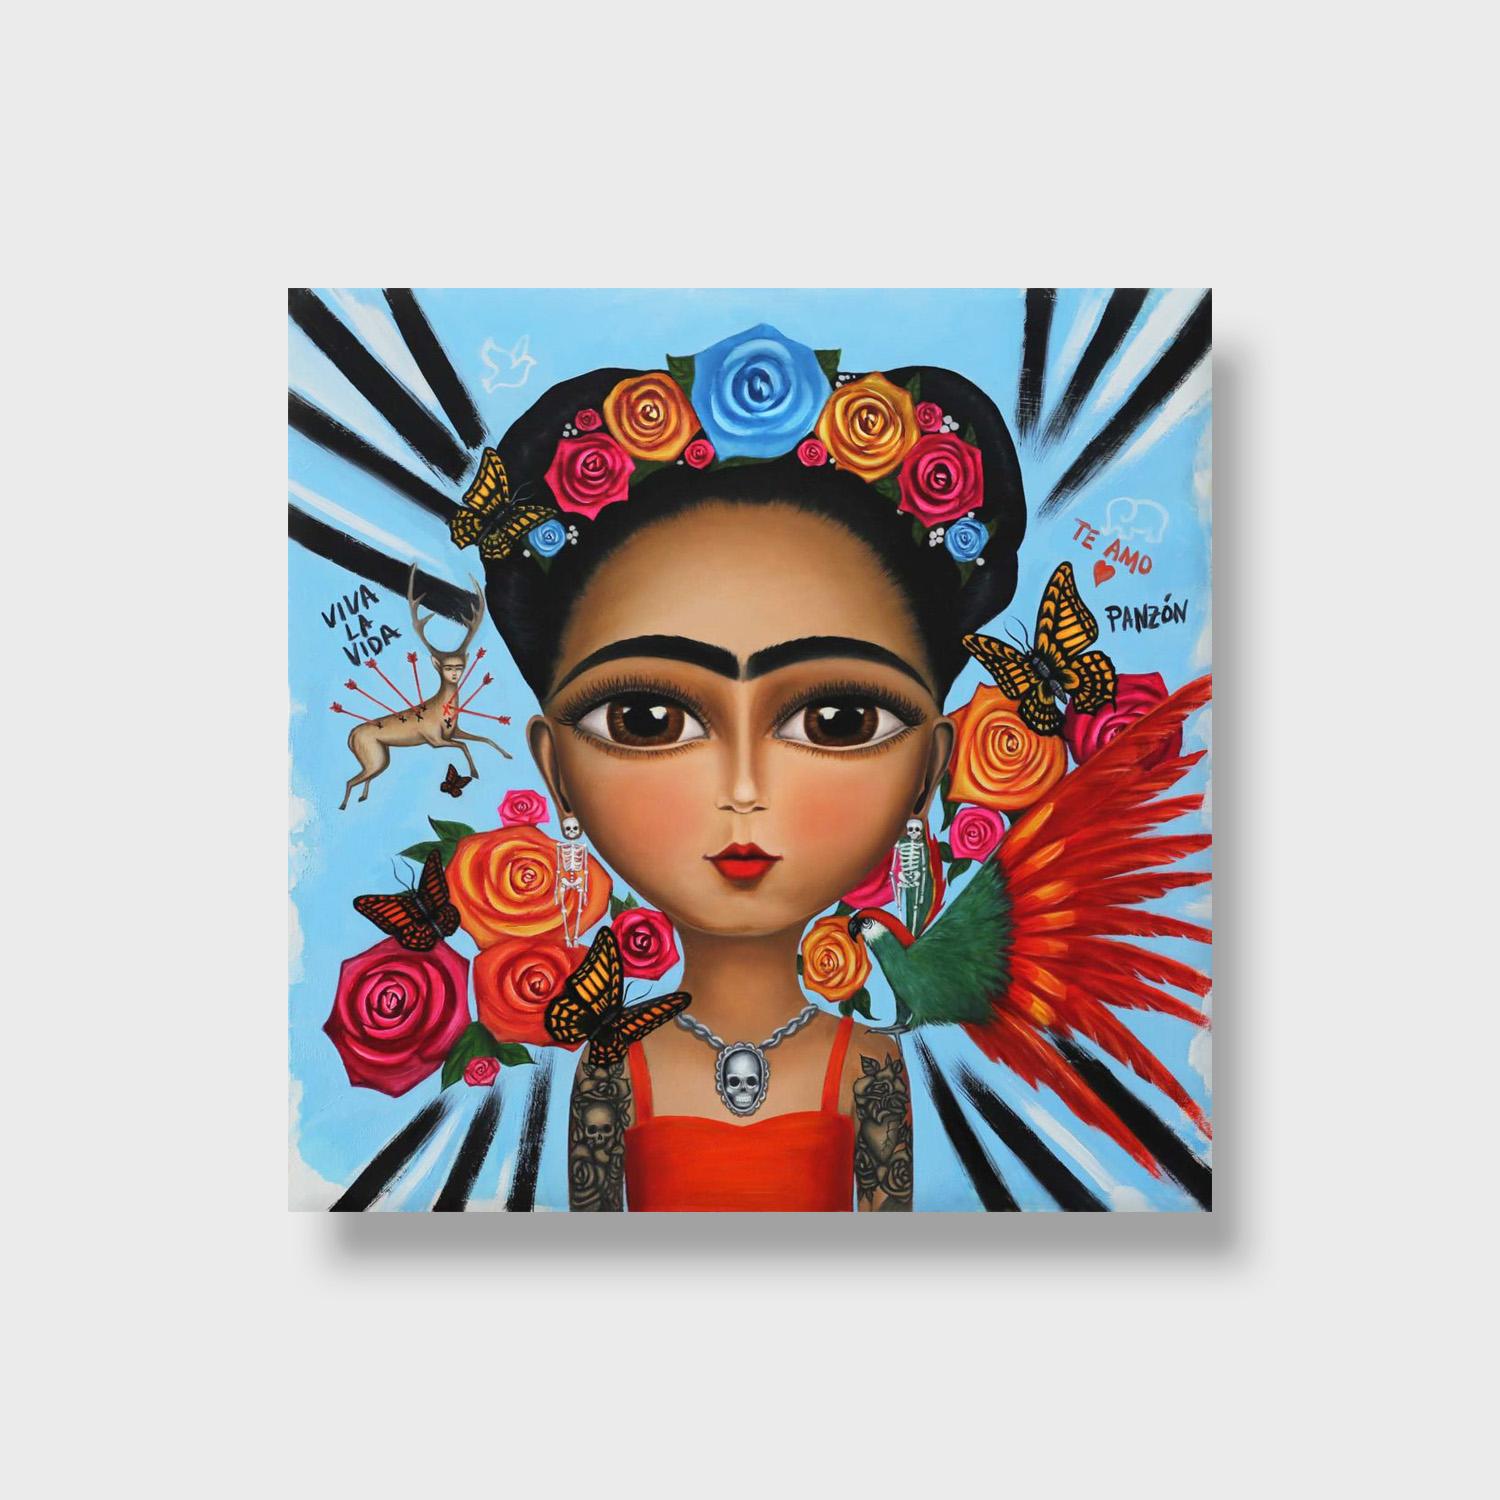 frida kahlo paintings worth